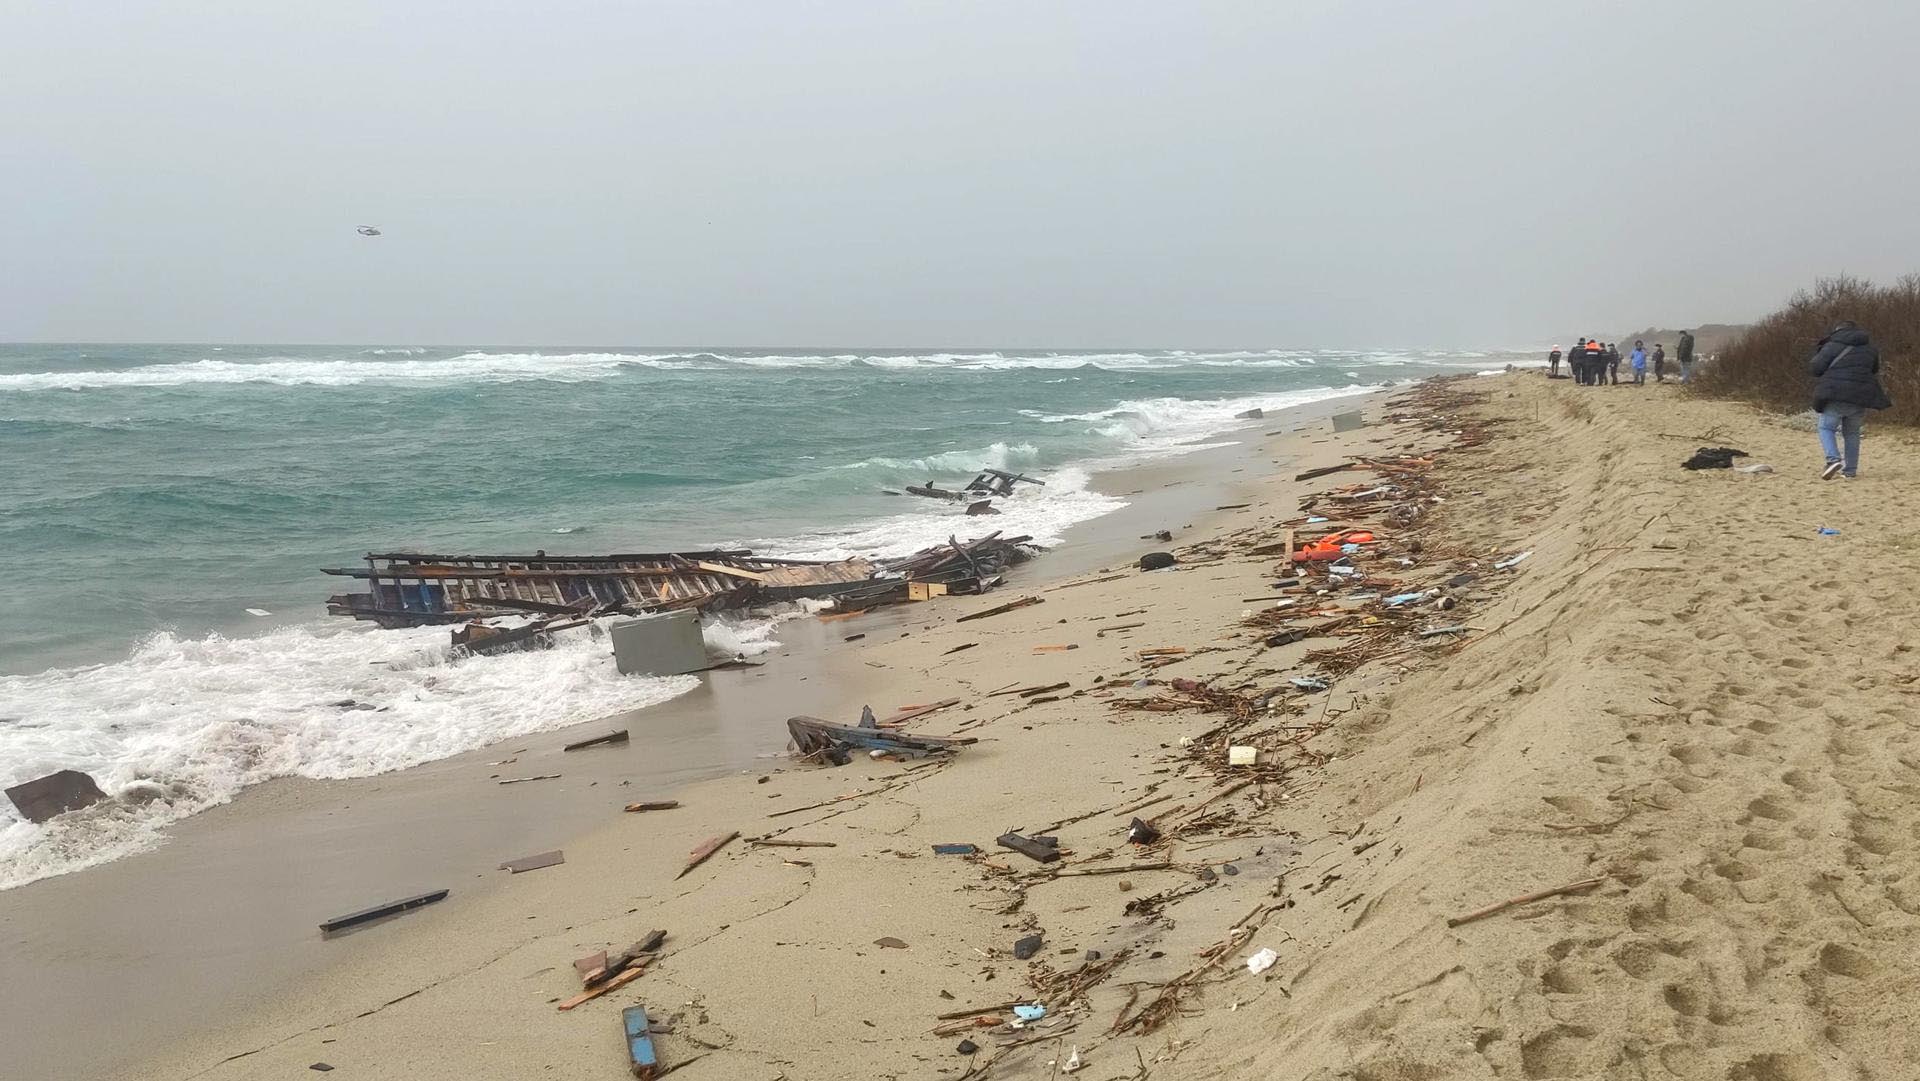 Escombros arrastrados a tierra en una playa cerca de Cutro, provincia de Crotone, sur de Italia. EFE/EPA/GIUSEPPE PIPITA 